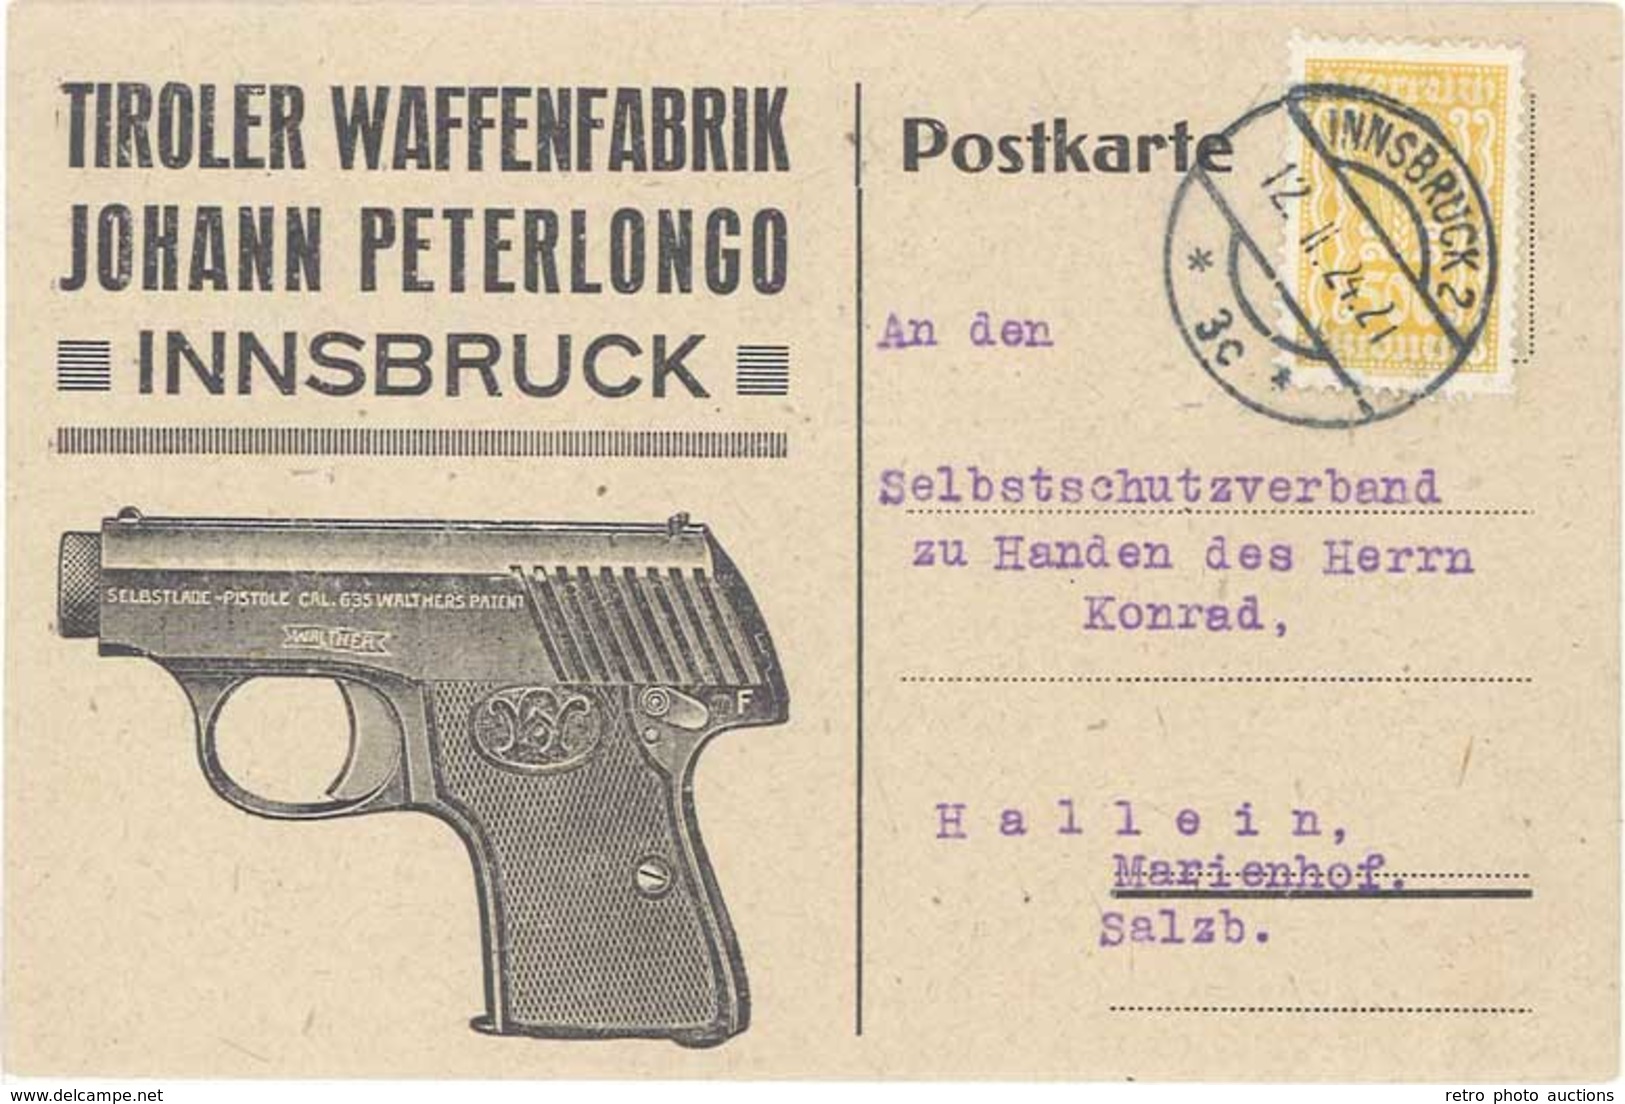 TB Tiroler Waffenfabrik Johann Peterlongo, Innsbruck - Advertising